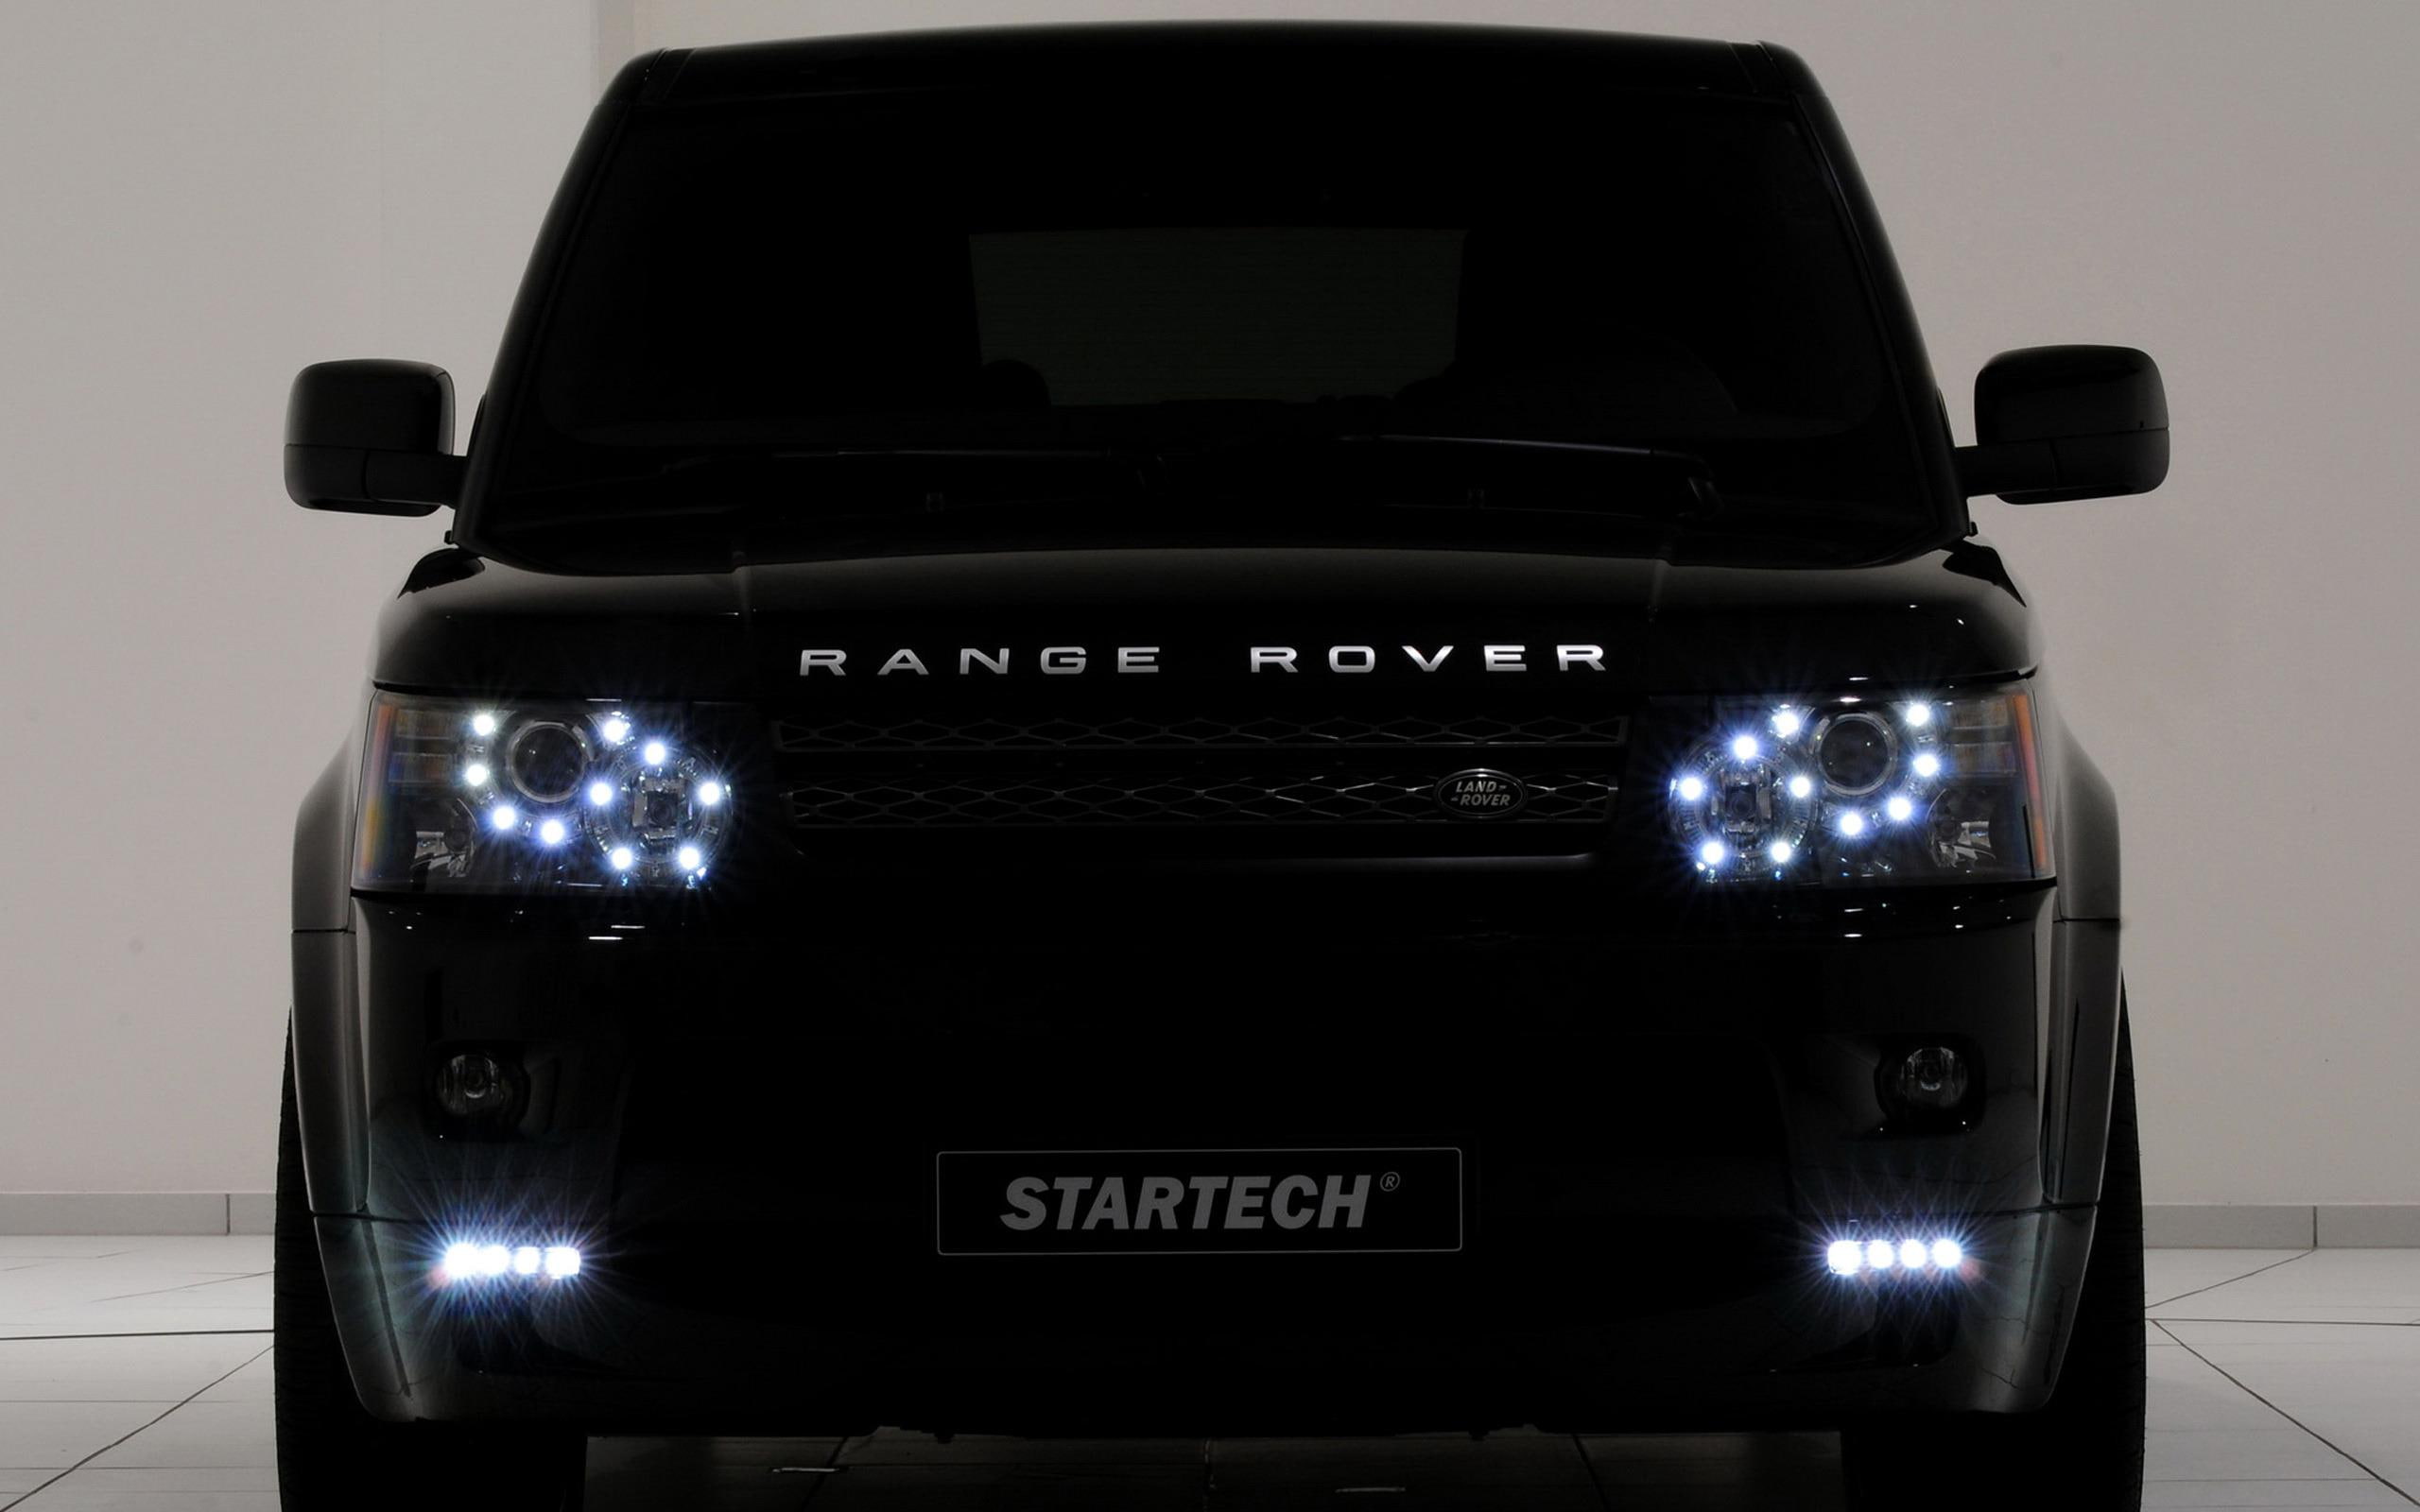 Startech Land Rover Range Rover, black land rover range rover